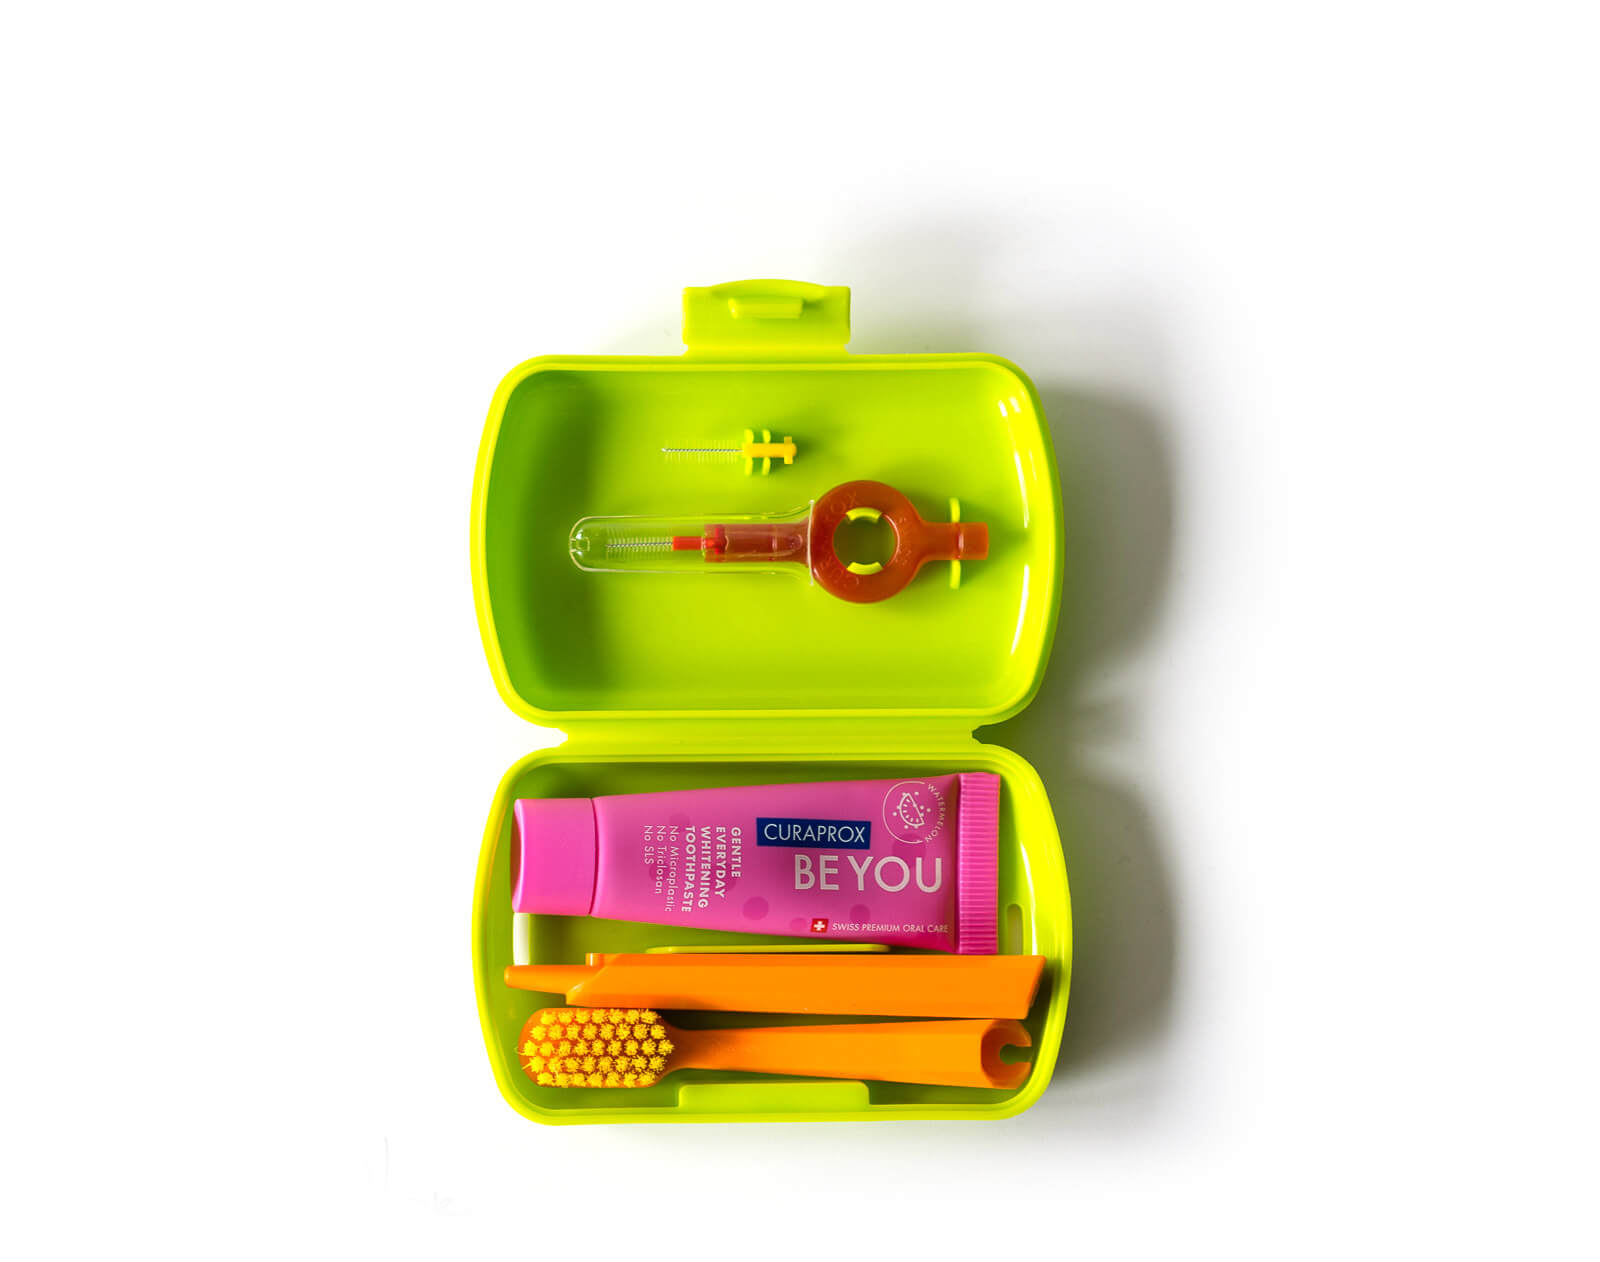 Curaprox - Stylisch bunte und innovative Zahnpflege - Alles für die perfekte Mundpflege - Curaprox Travel Set